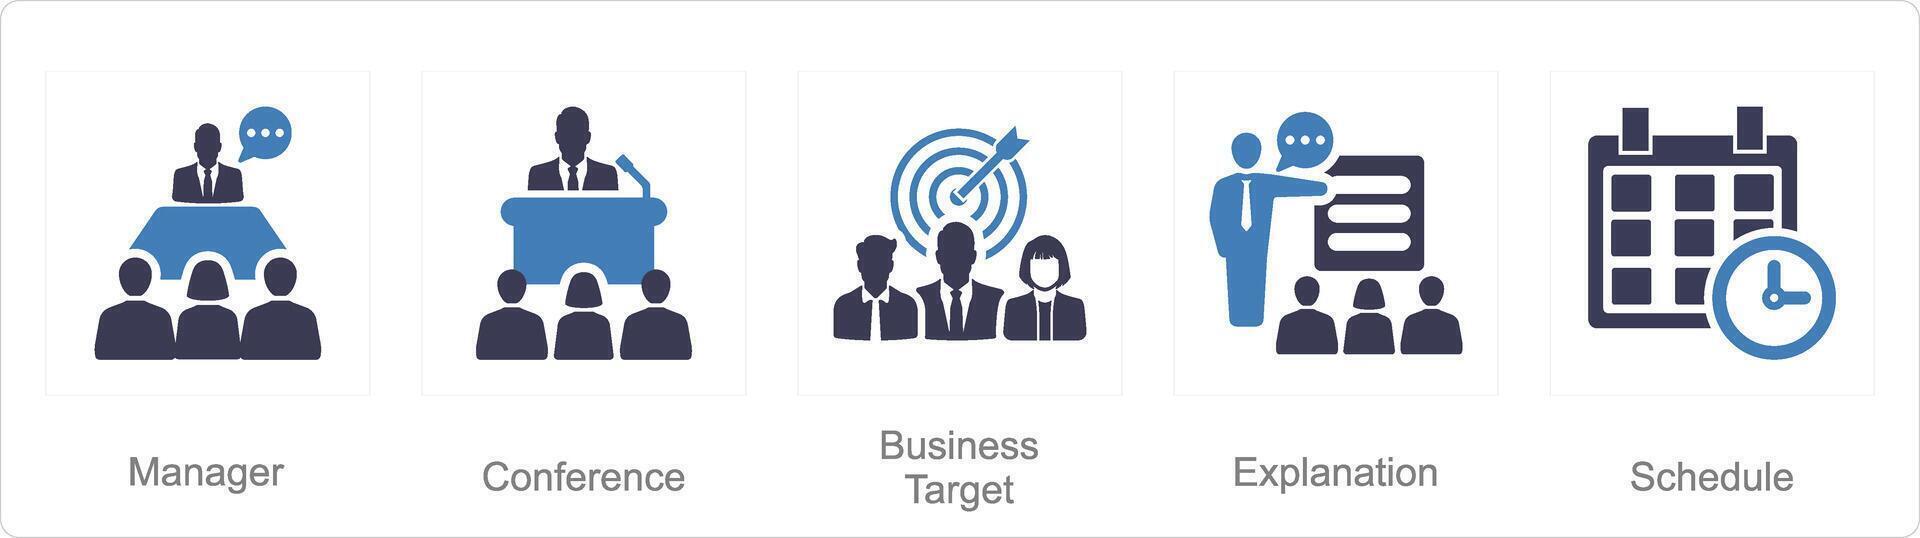 uma conjunto do 5 o negócio apresentação ícones Como gerente, conferência, o negócio alvo vetor